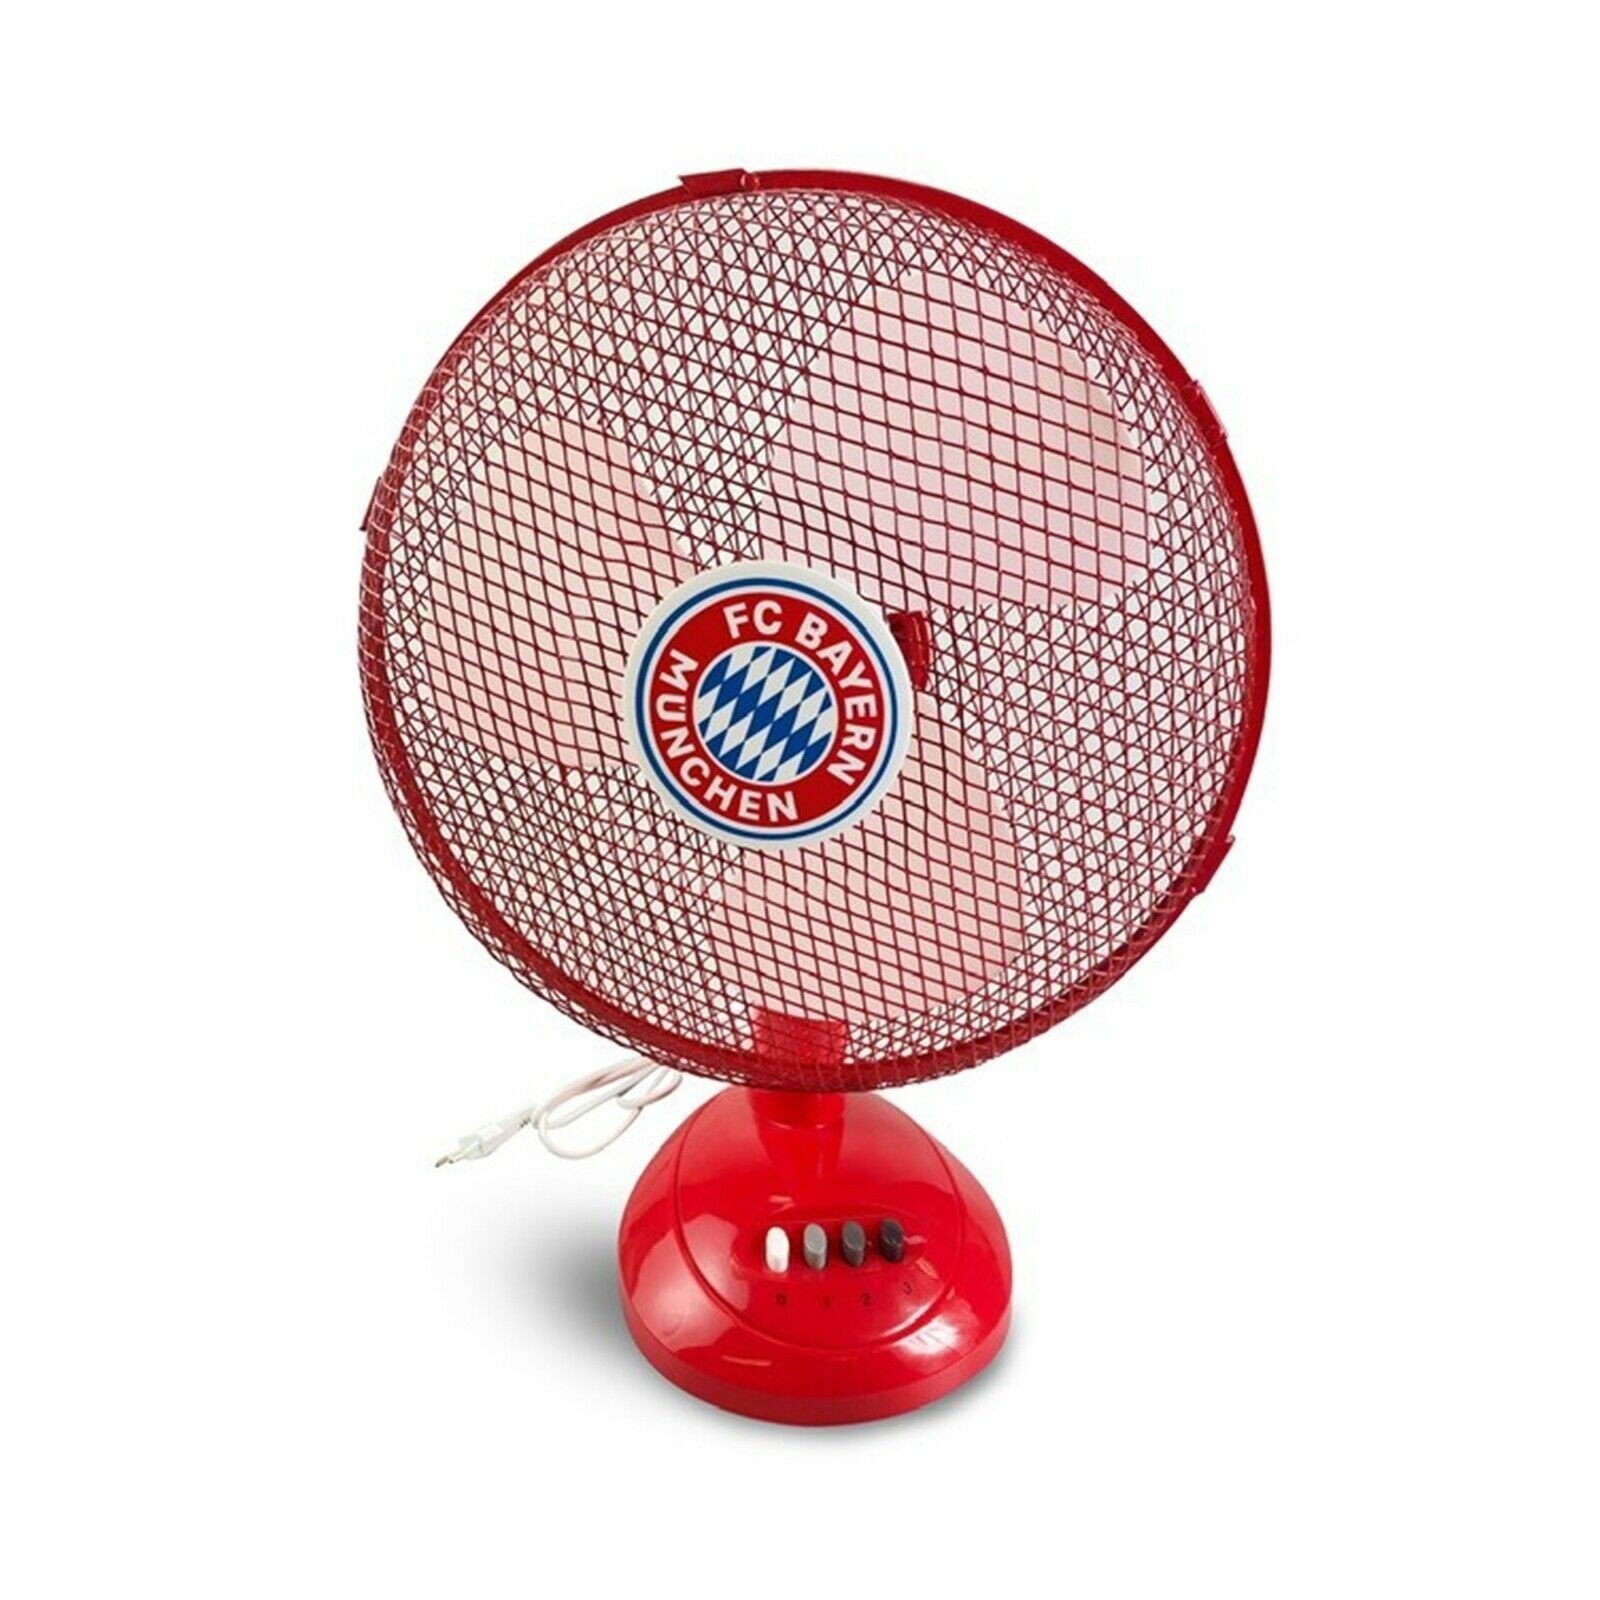 ECG Tischventilator FT30A FCB, 30,00 cm Durchmesser, einzigartiges FC Bayern Design, 3 Geschwindigkeitsstufen